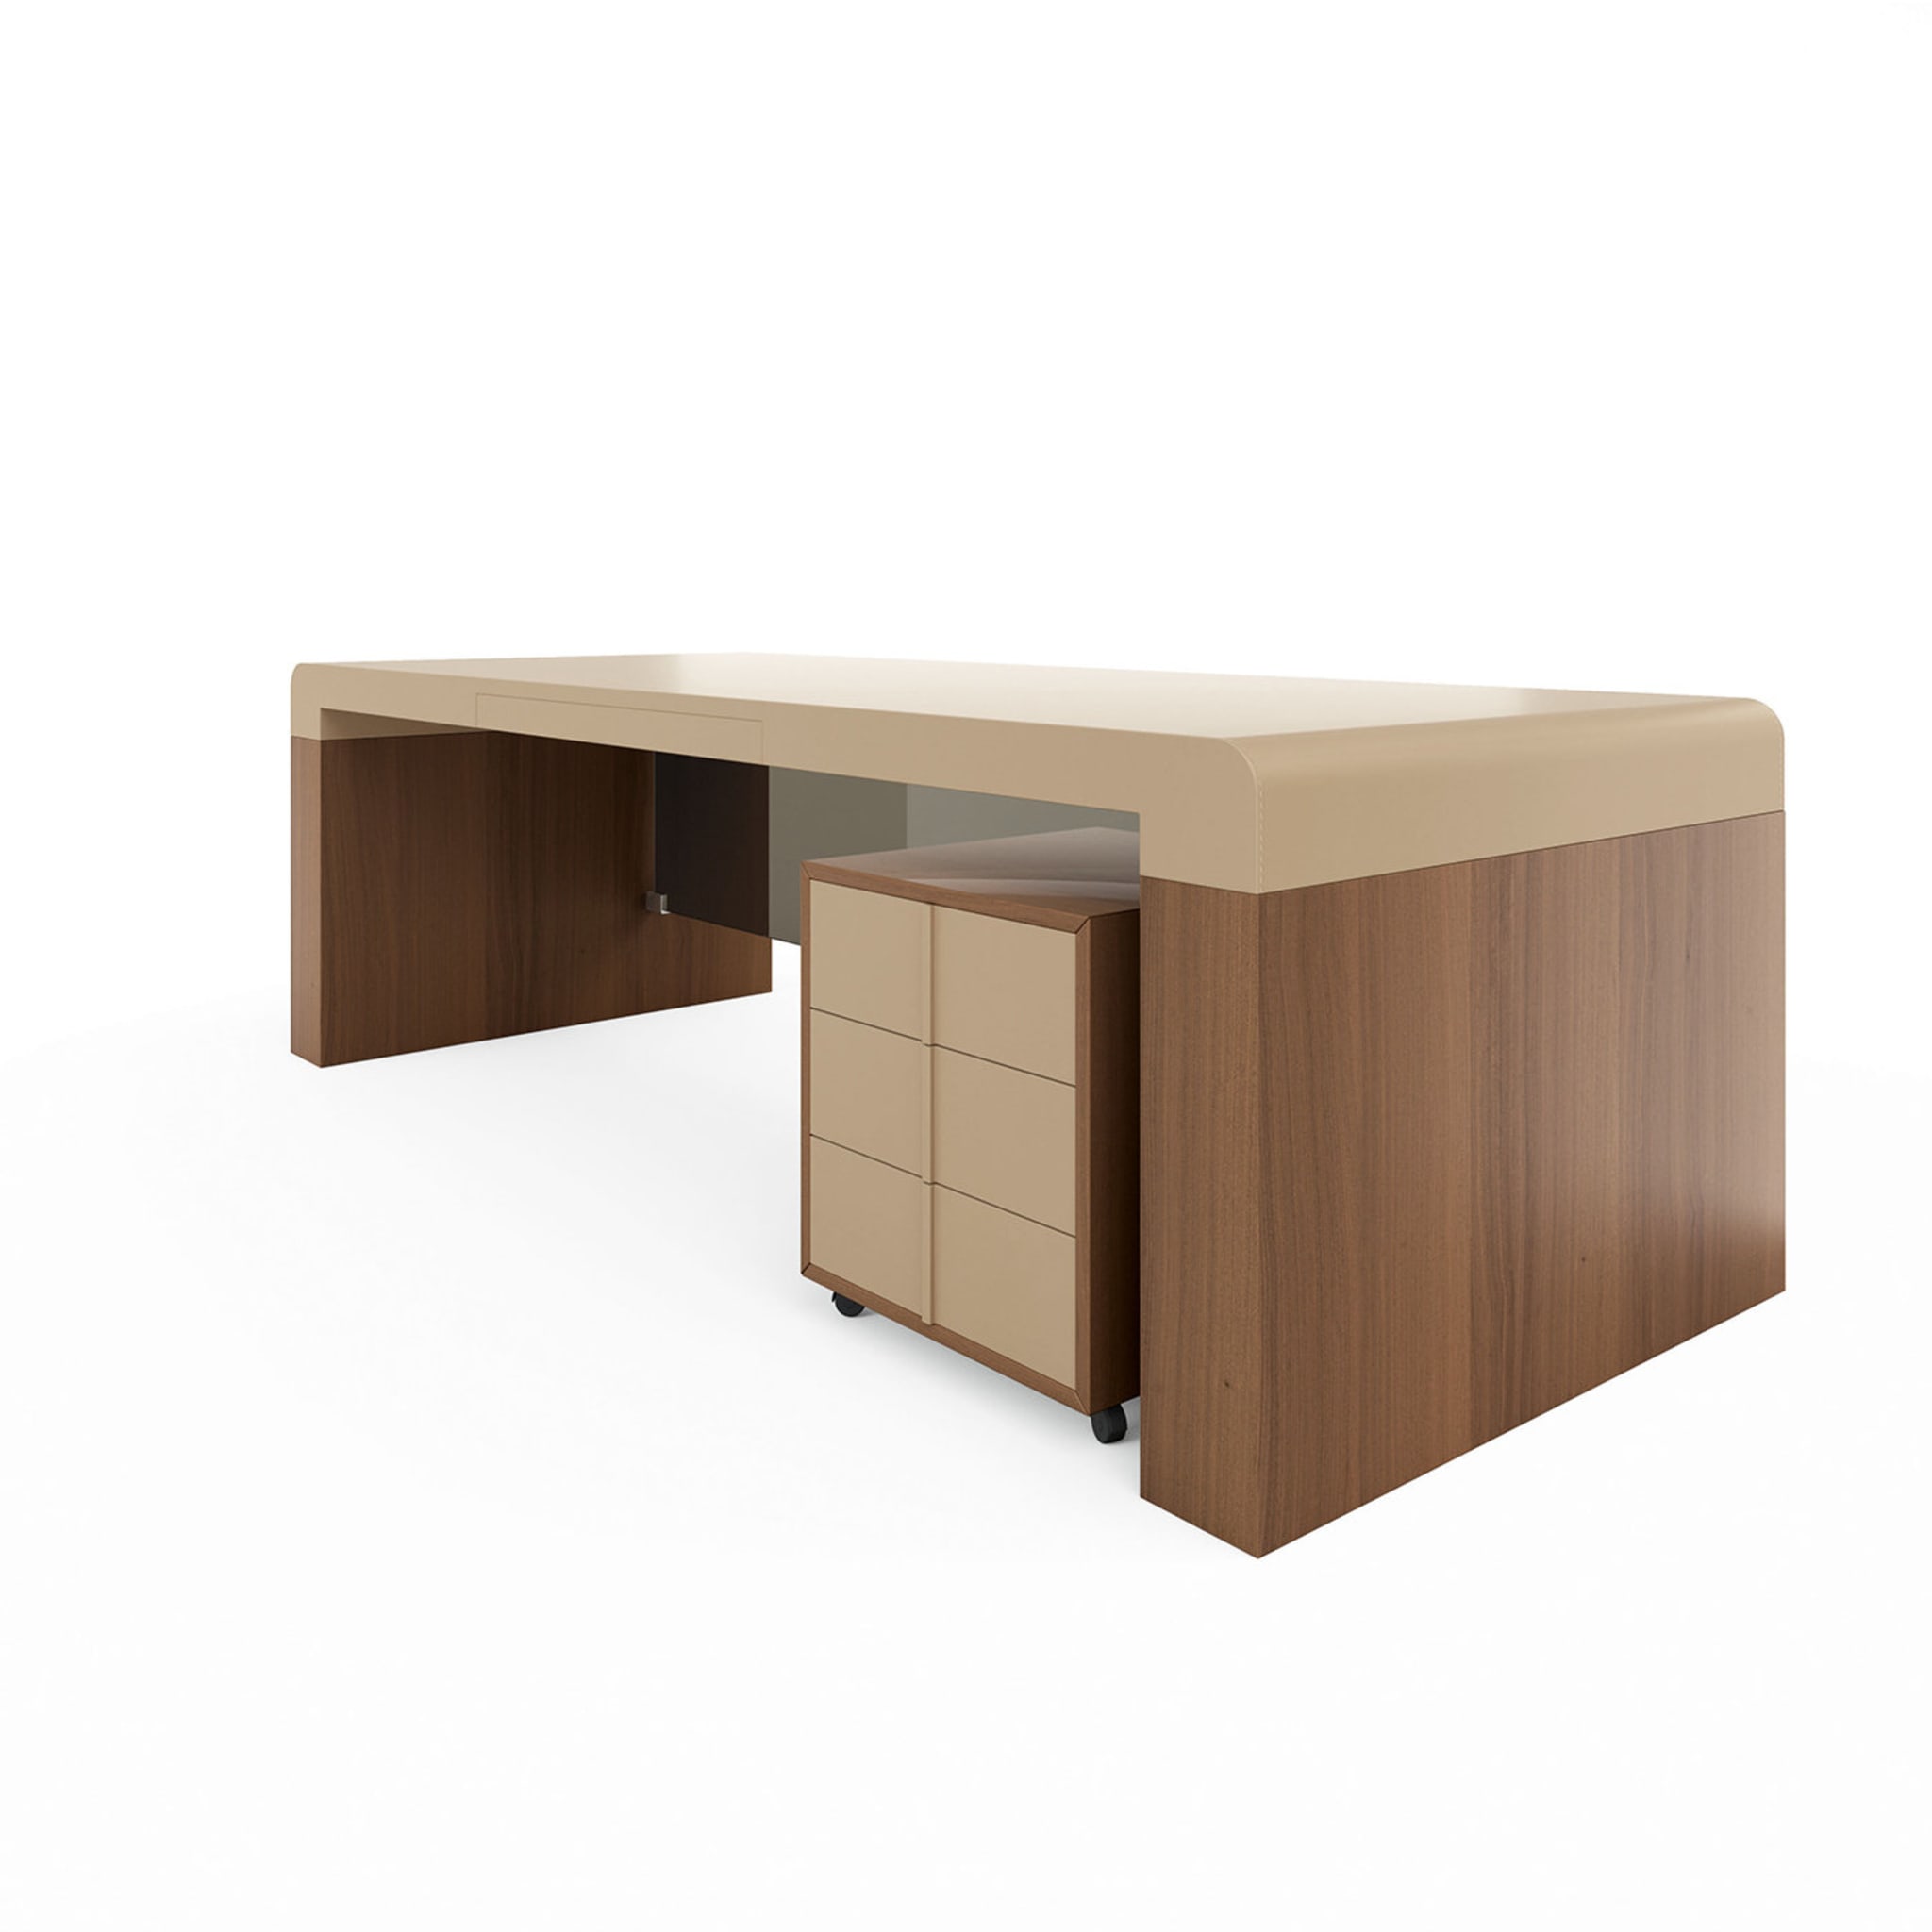 Fusion Desk by Daniele lo Scalzo Moscheri - Alternative view 1